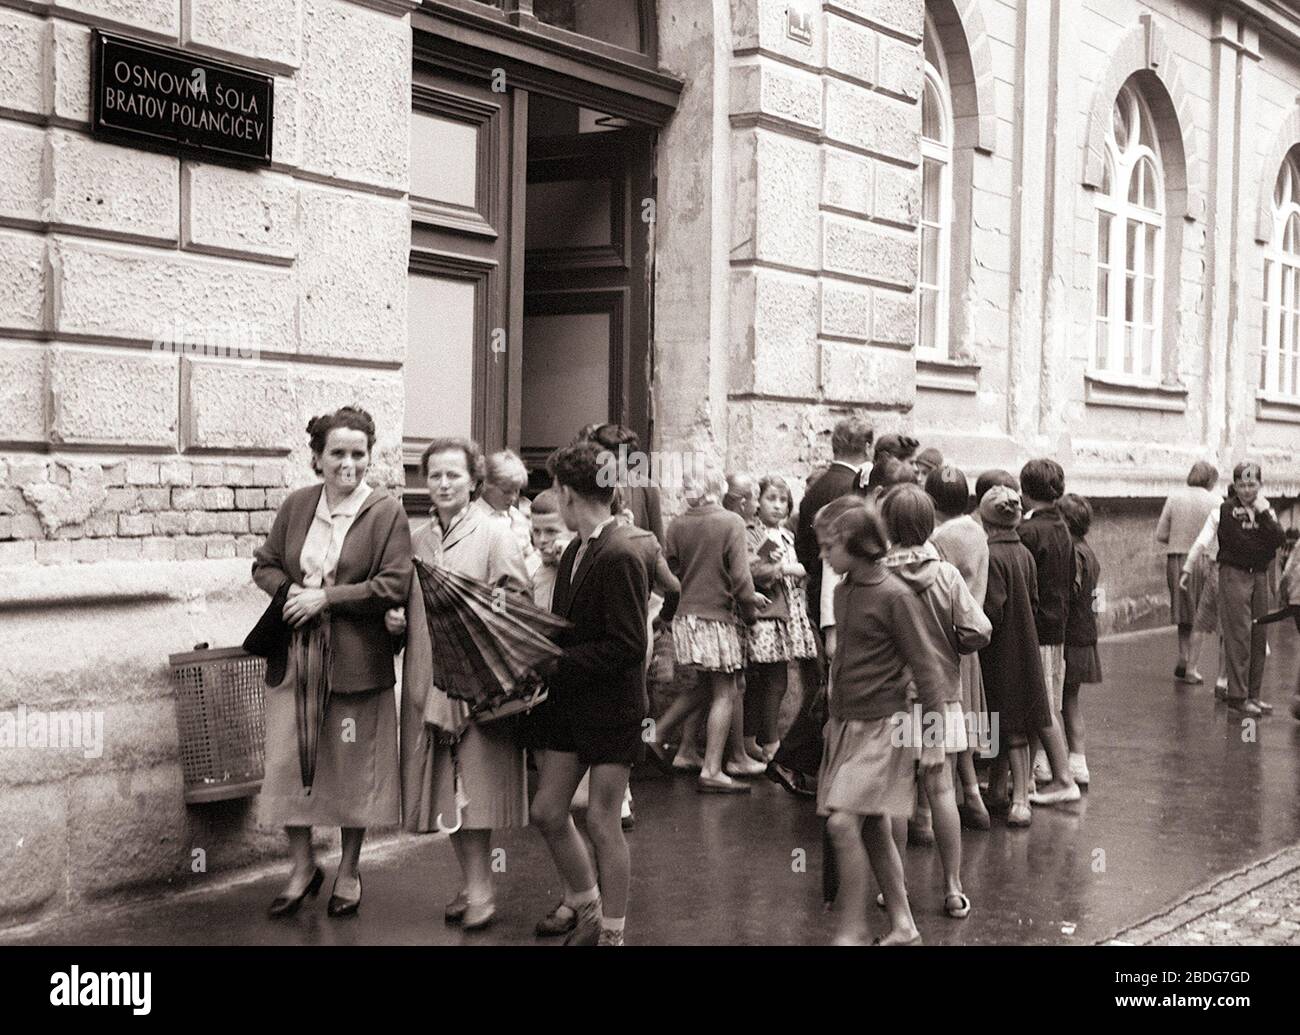 5. september 1960, Maribor: Po vseh ulicah in cestah našega mesta so se zlivali danes zjutraj skozi široko odprta šolska vrata potoki šolarjev. Najmanjše - tiste, ki gredo letos prvikrat v šolo - so na poti v šolo spremljale mamice, nekateri malčki pa so jo mahali prvikrat v šolo kar v spremstvu starejših bratov in sester. Tudi gost dež ni mogel šolarjem, ki so se v počitnicah do dobra naigrali, natekali in nakopali, pokvariti vznemirjenega veselja ob zopetnem srečanju s šolo. (avtor fotografije: Dragiša Modrinjak) Stock Photo